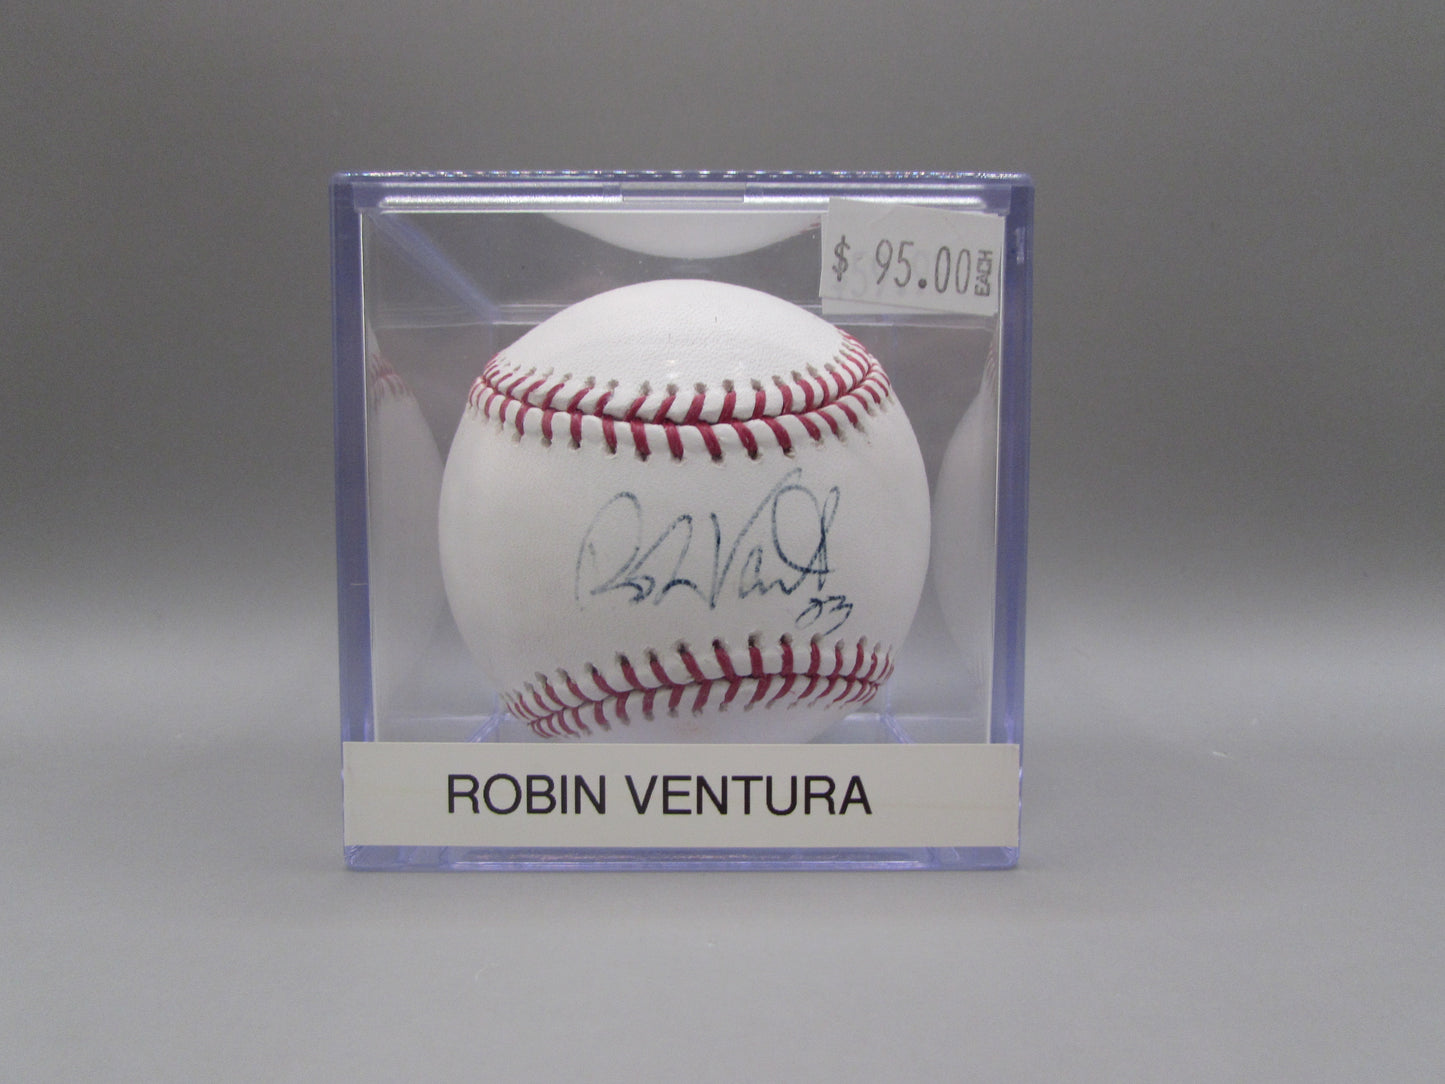 Robin Ventura signed baseball